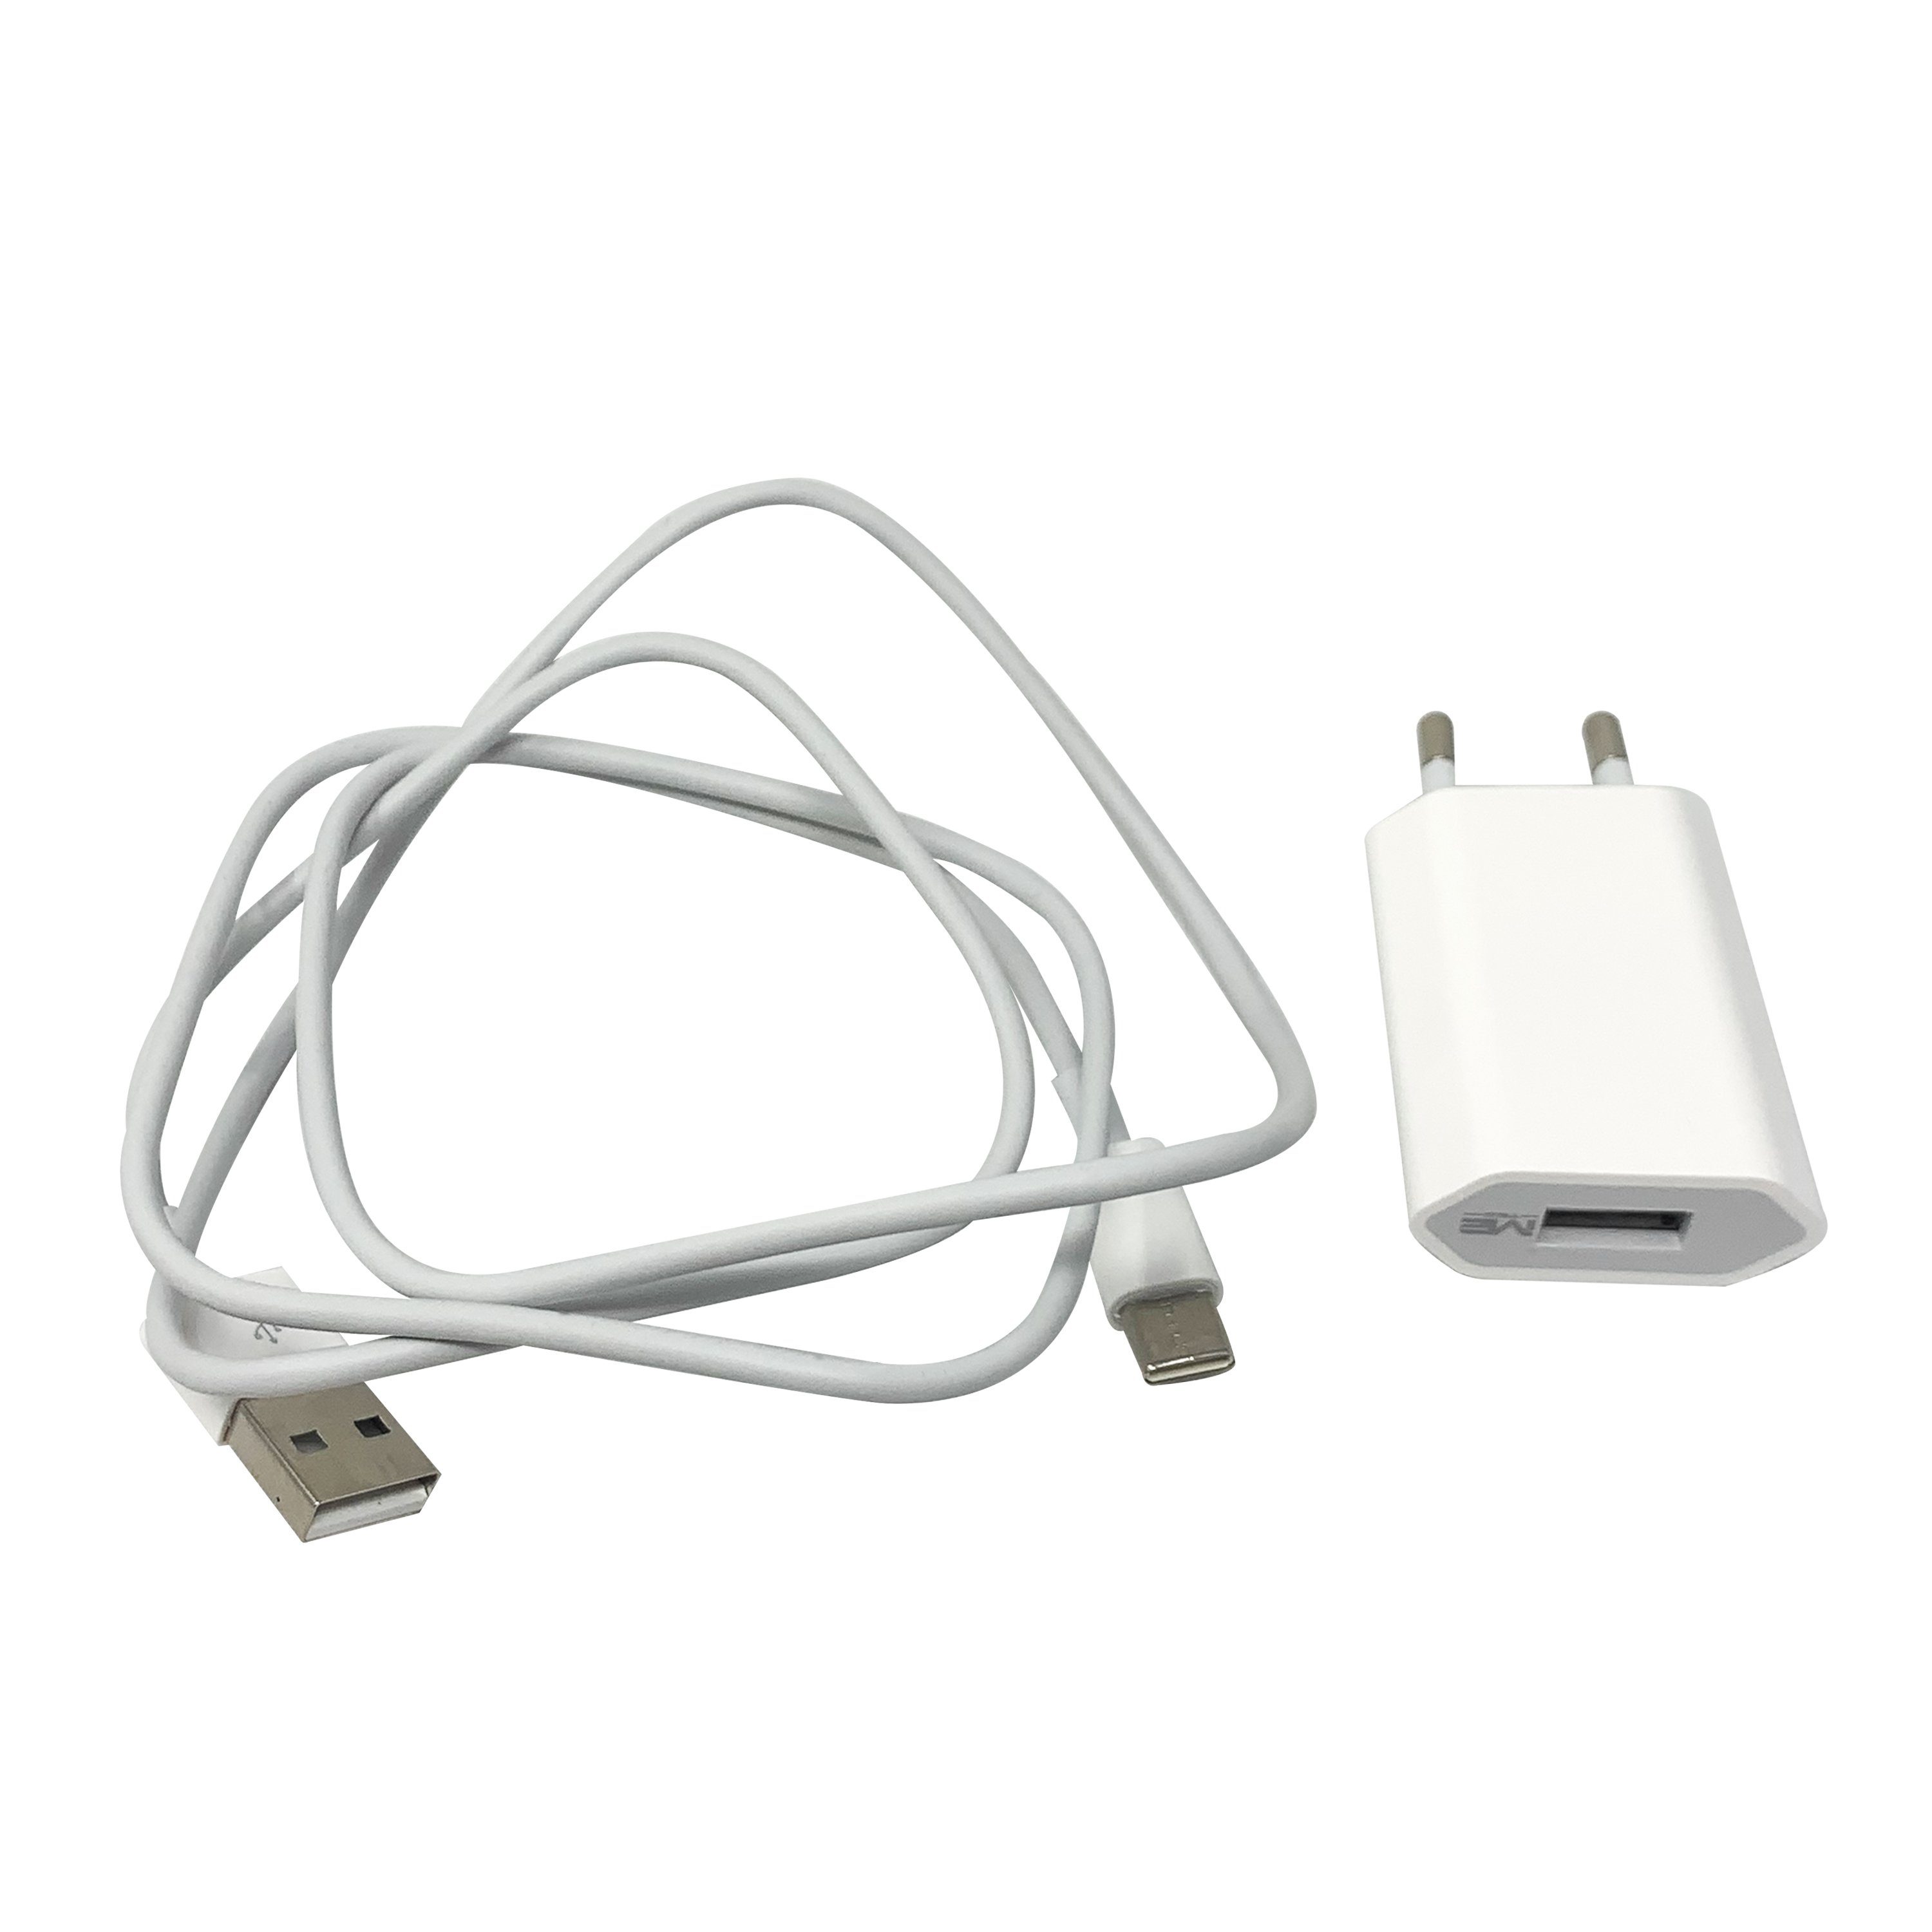 H-basics USB-C Ladekabel 1 Meter - 1A, 5W, ABS für neue Handy modelle,  Samsung, Huawei, OnePlus Smartphone-Ladegerät